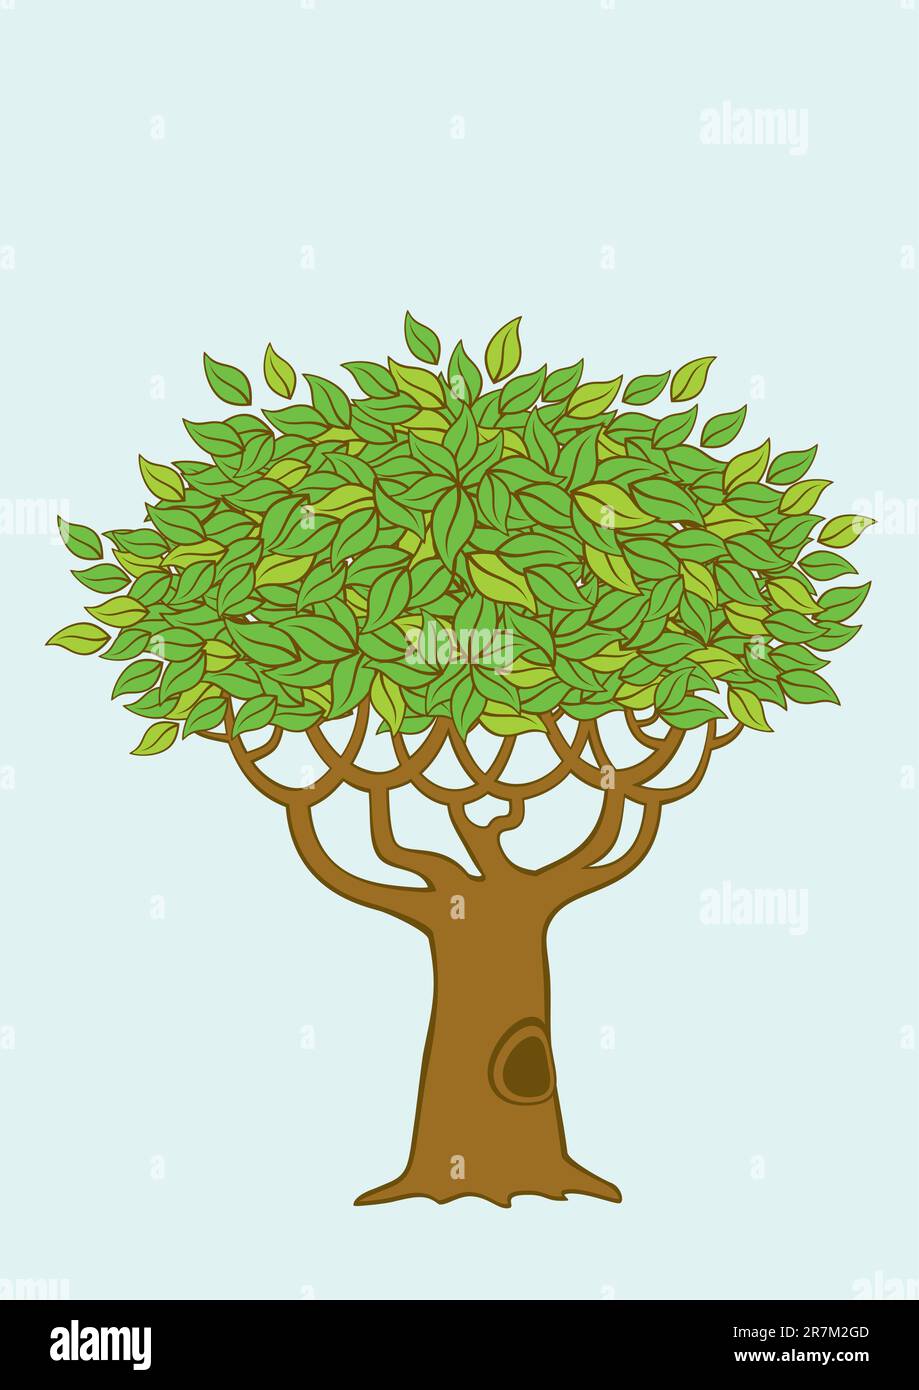 Ilustración de un árbol con follaje verde Ilustración del Vector